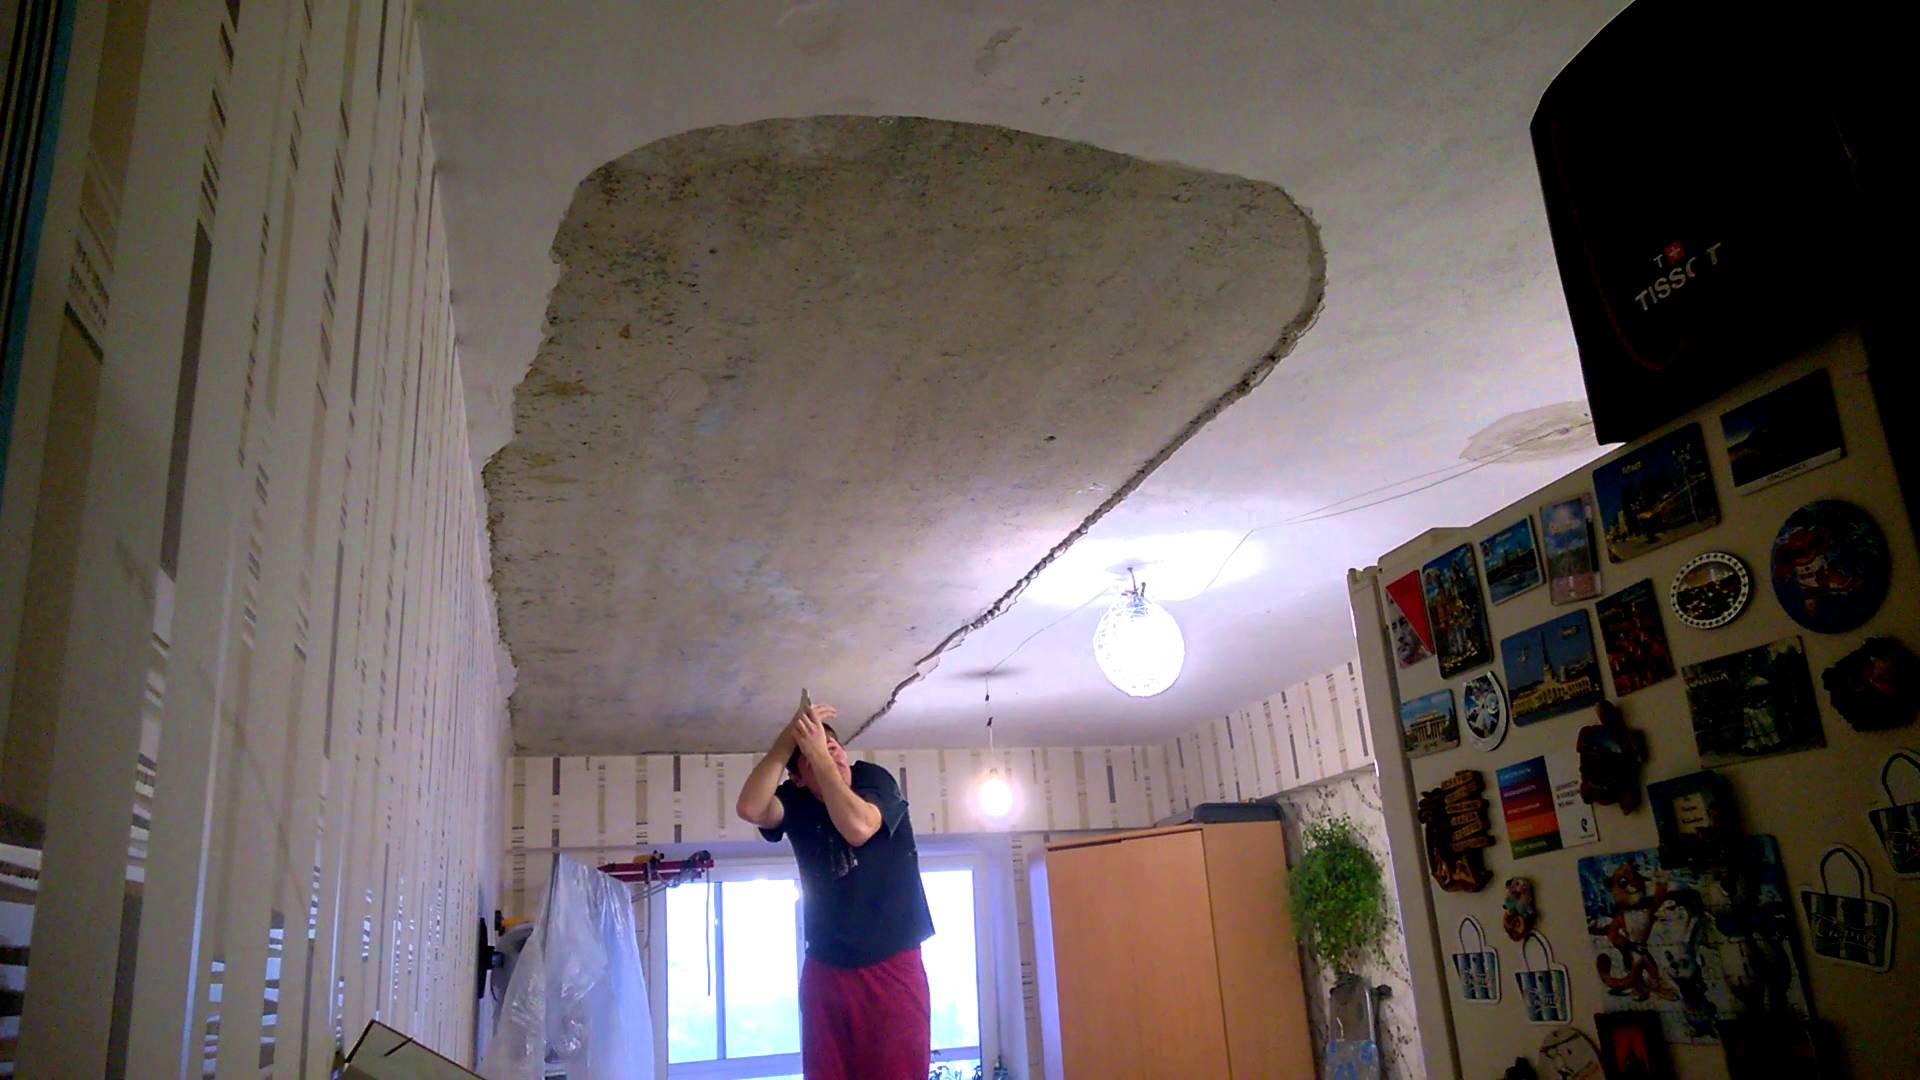 Сонник потолок в квартире. Провалился потолок в квартире. Потолок обваливается. Штукатурка на потолке осыпалась. Обвалился потолок.